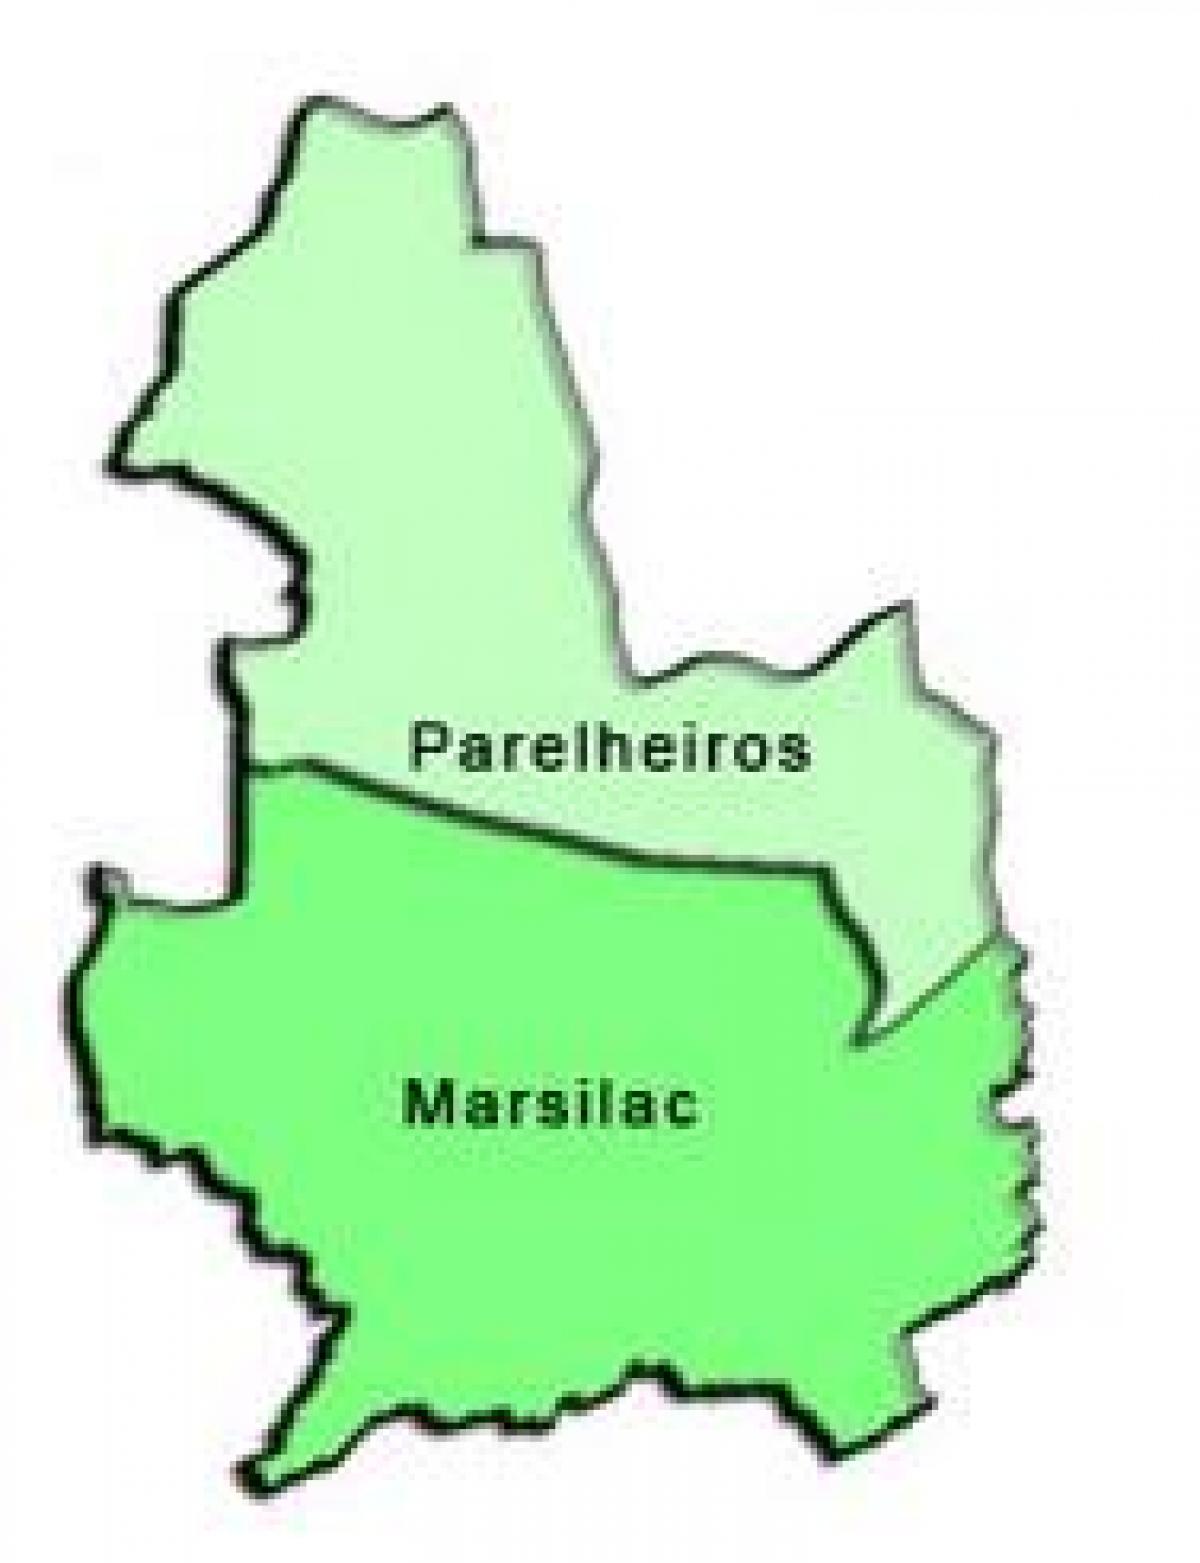 Карта на Parelheiros под-префектурата